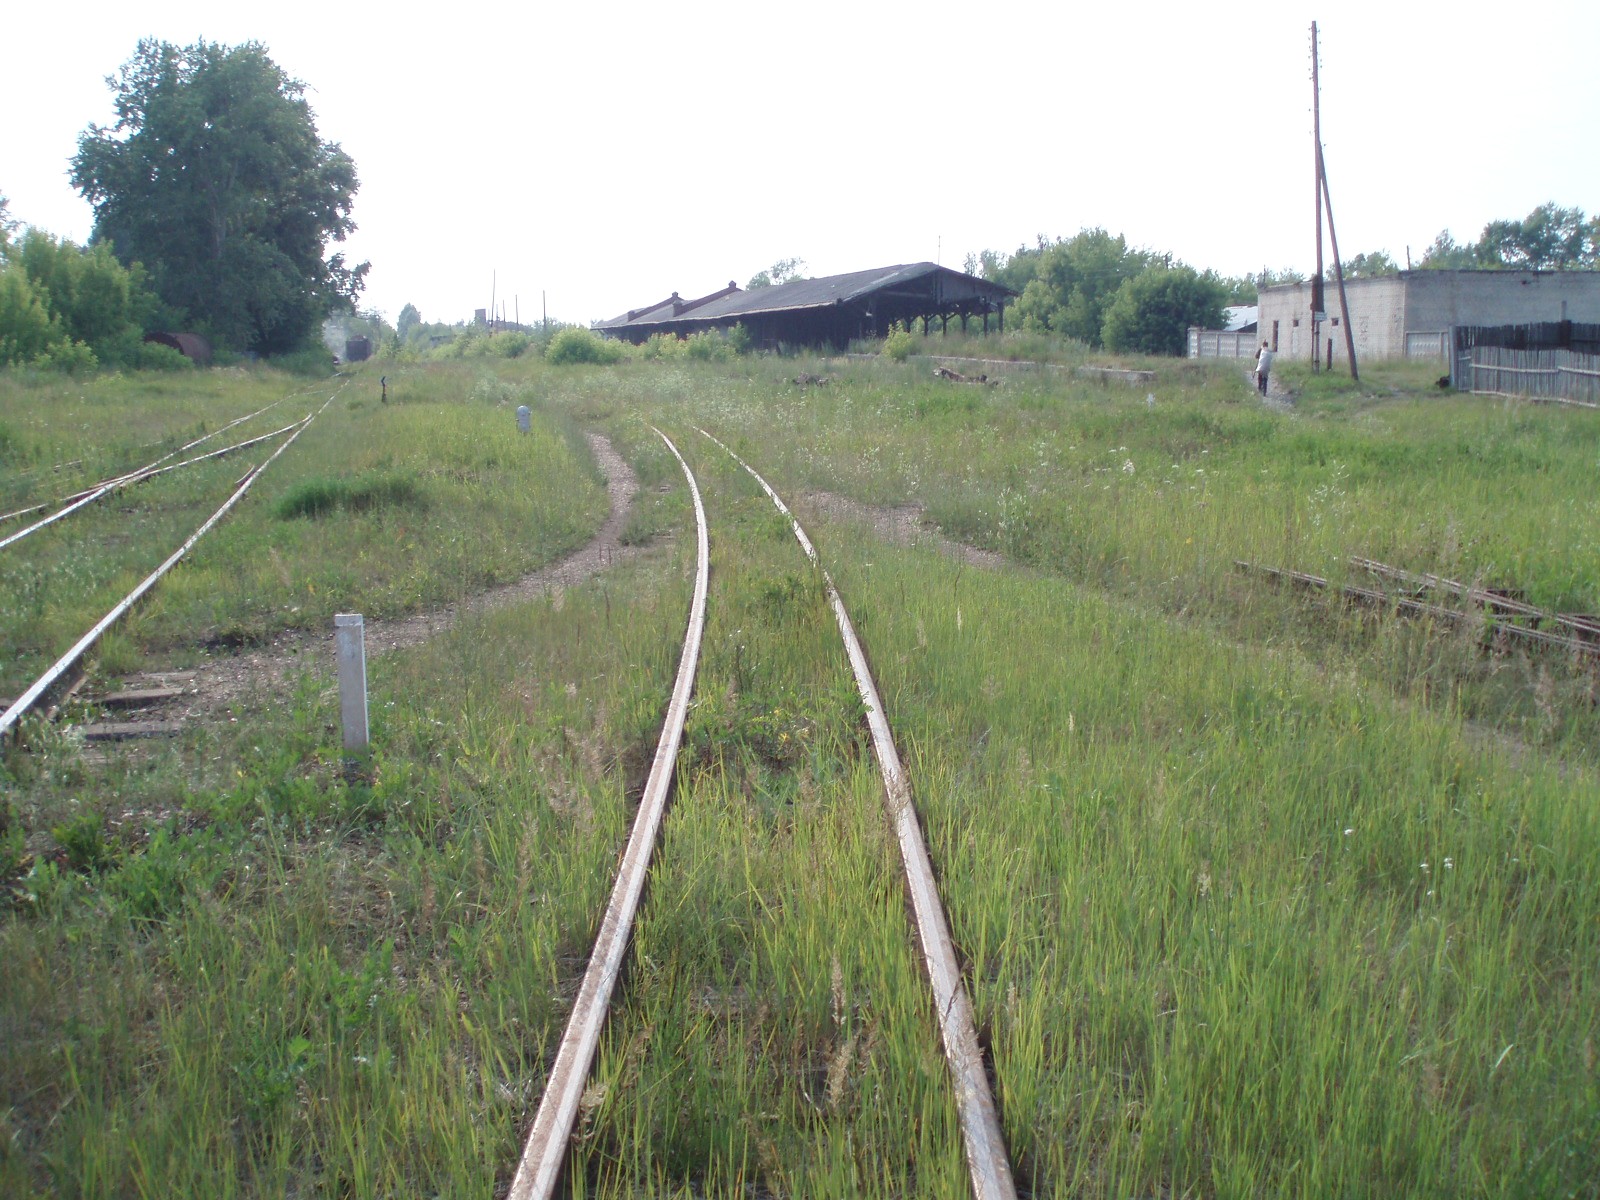 Рязанско-Владимирская узкоколейная железная дорога - фотографии, сделанные в 2006 году (часть 5)